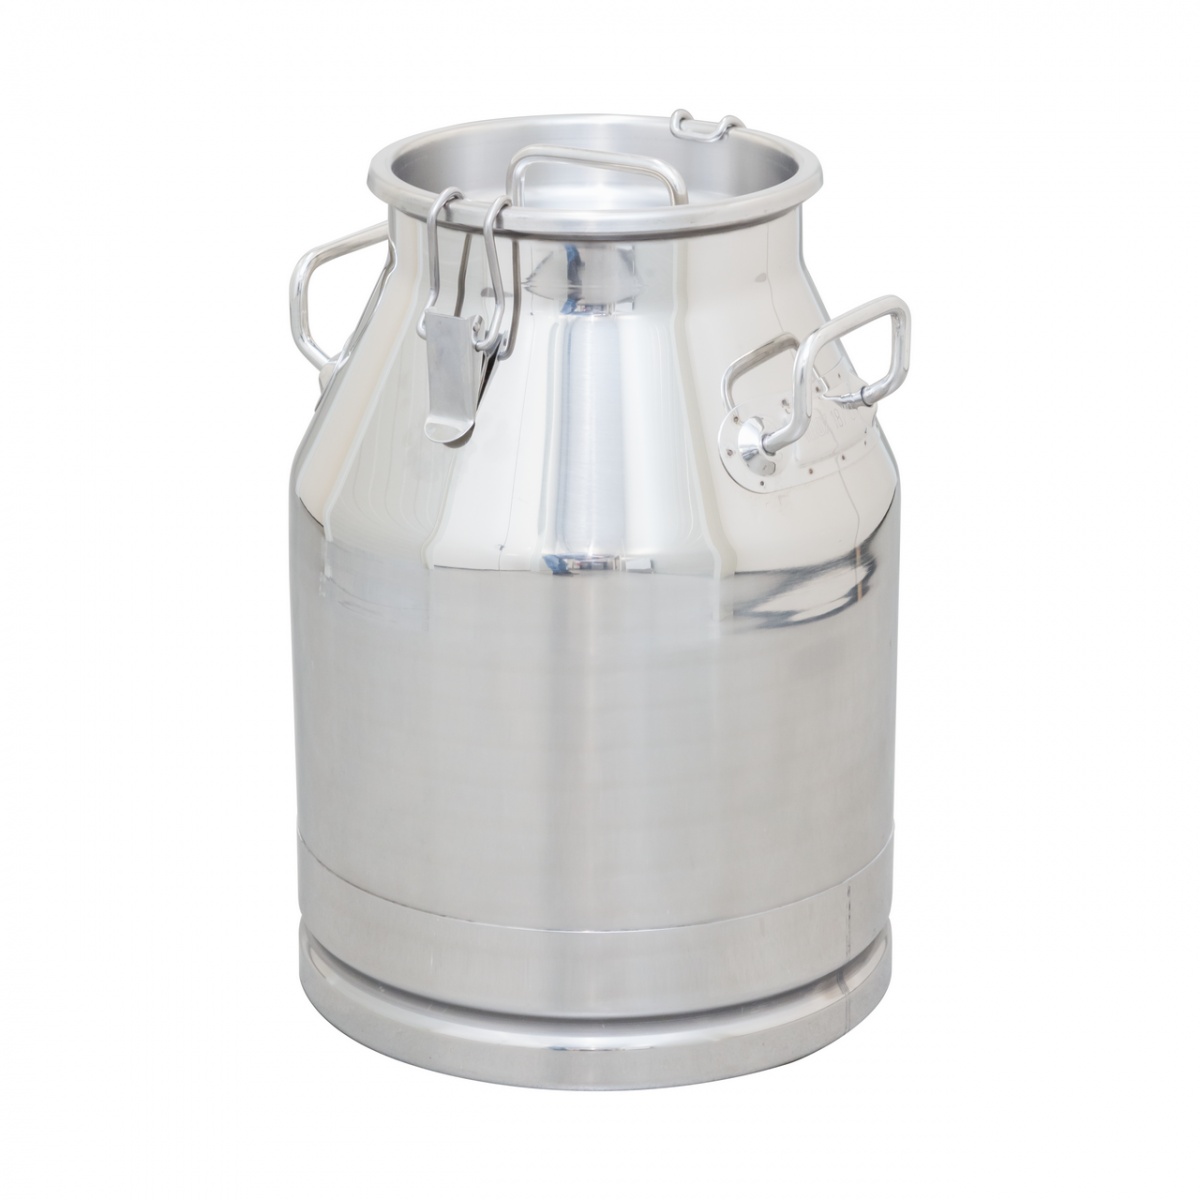 Inox tejhordó kondér, csatos fedéllel, 30 liter